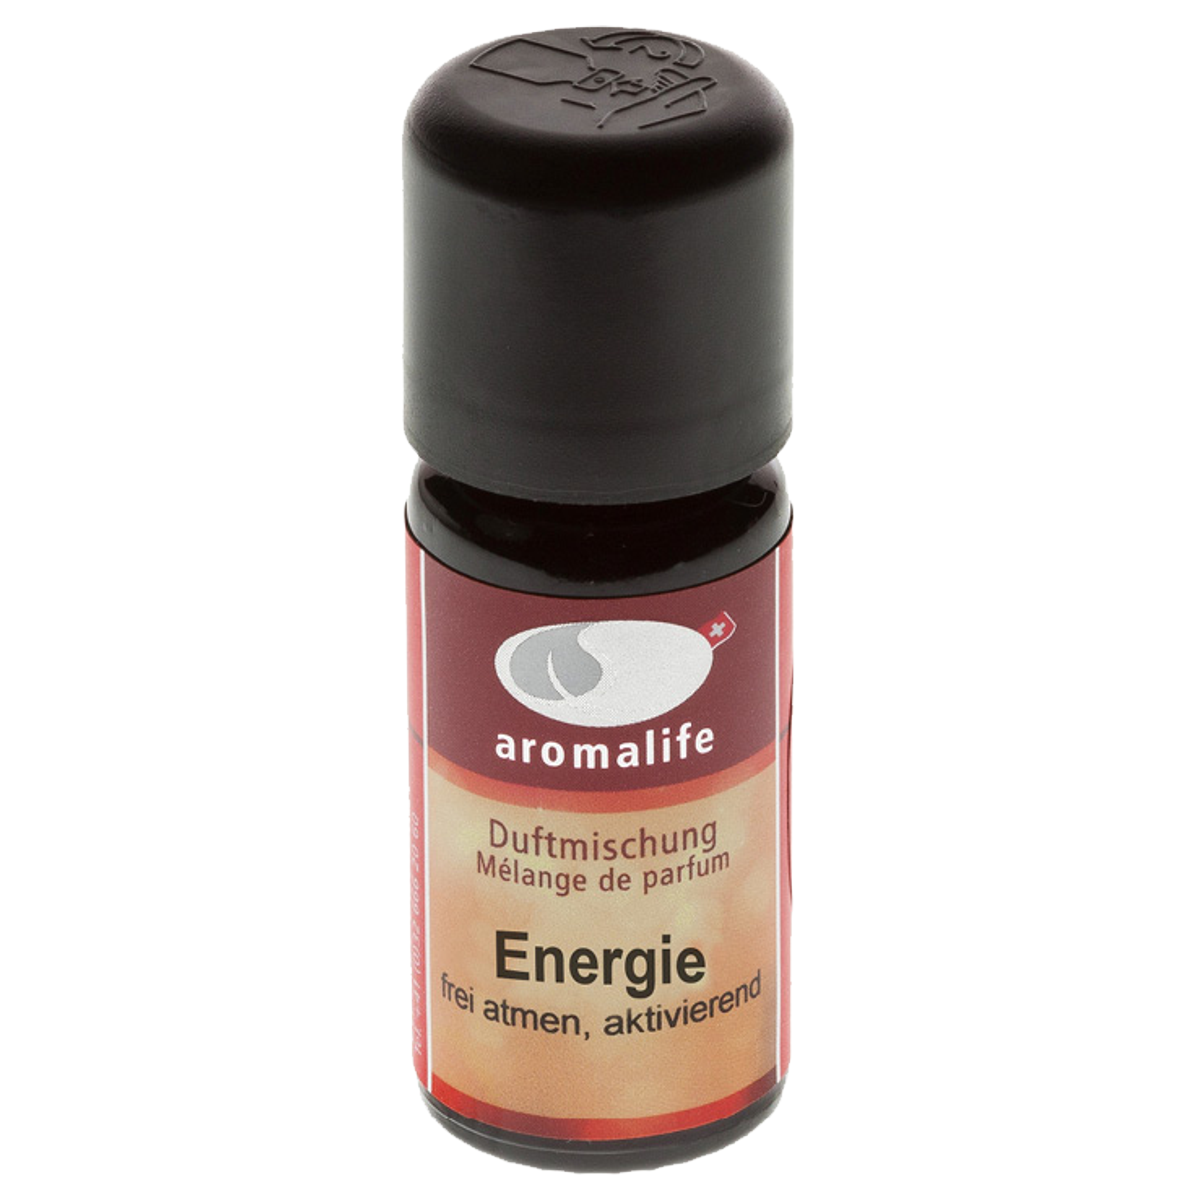 Aromalife Duftmischung Energie 10 ml